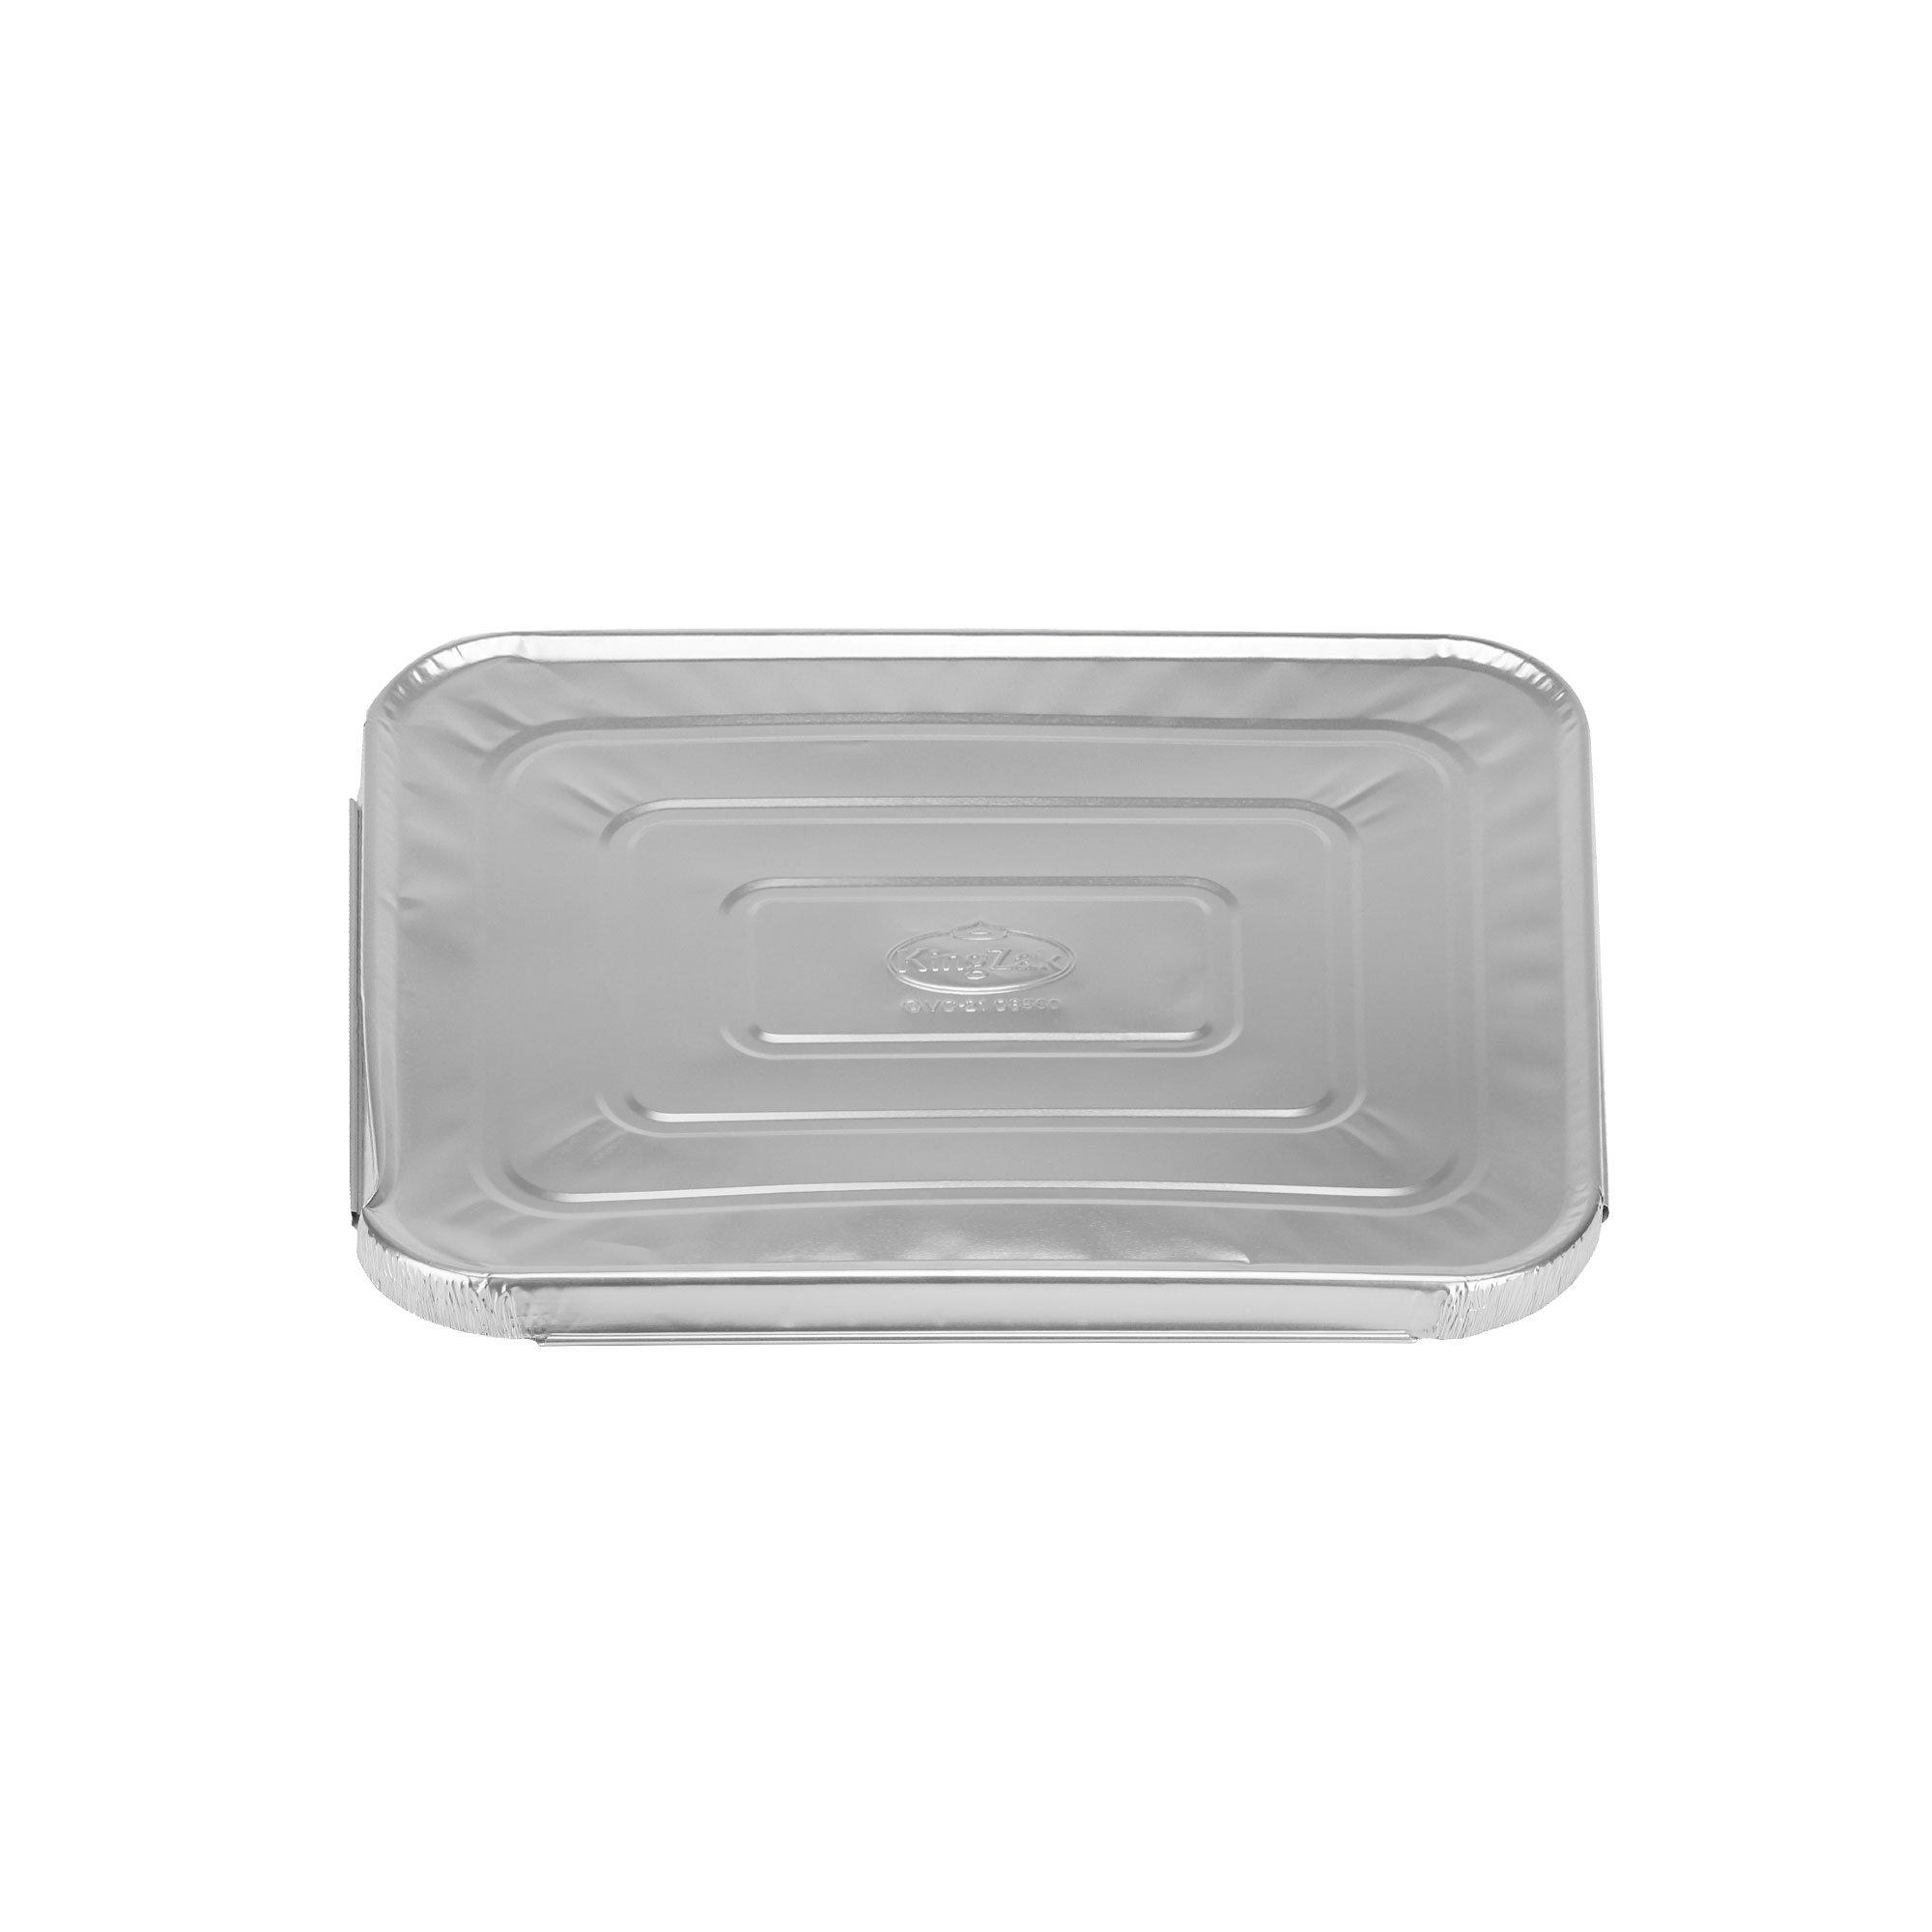 40] Aluminum Pans 9x13 Disposable Foil Pans Half Size Steam Table